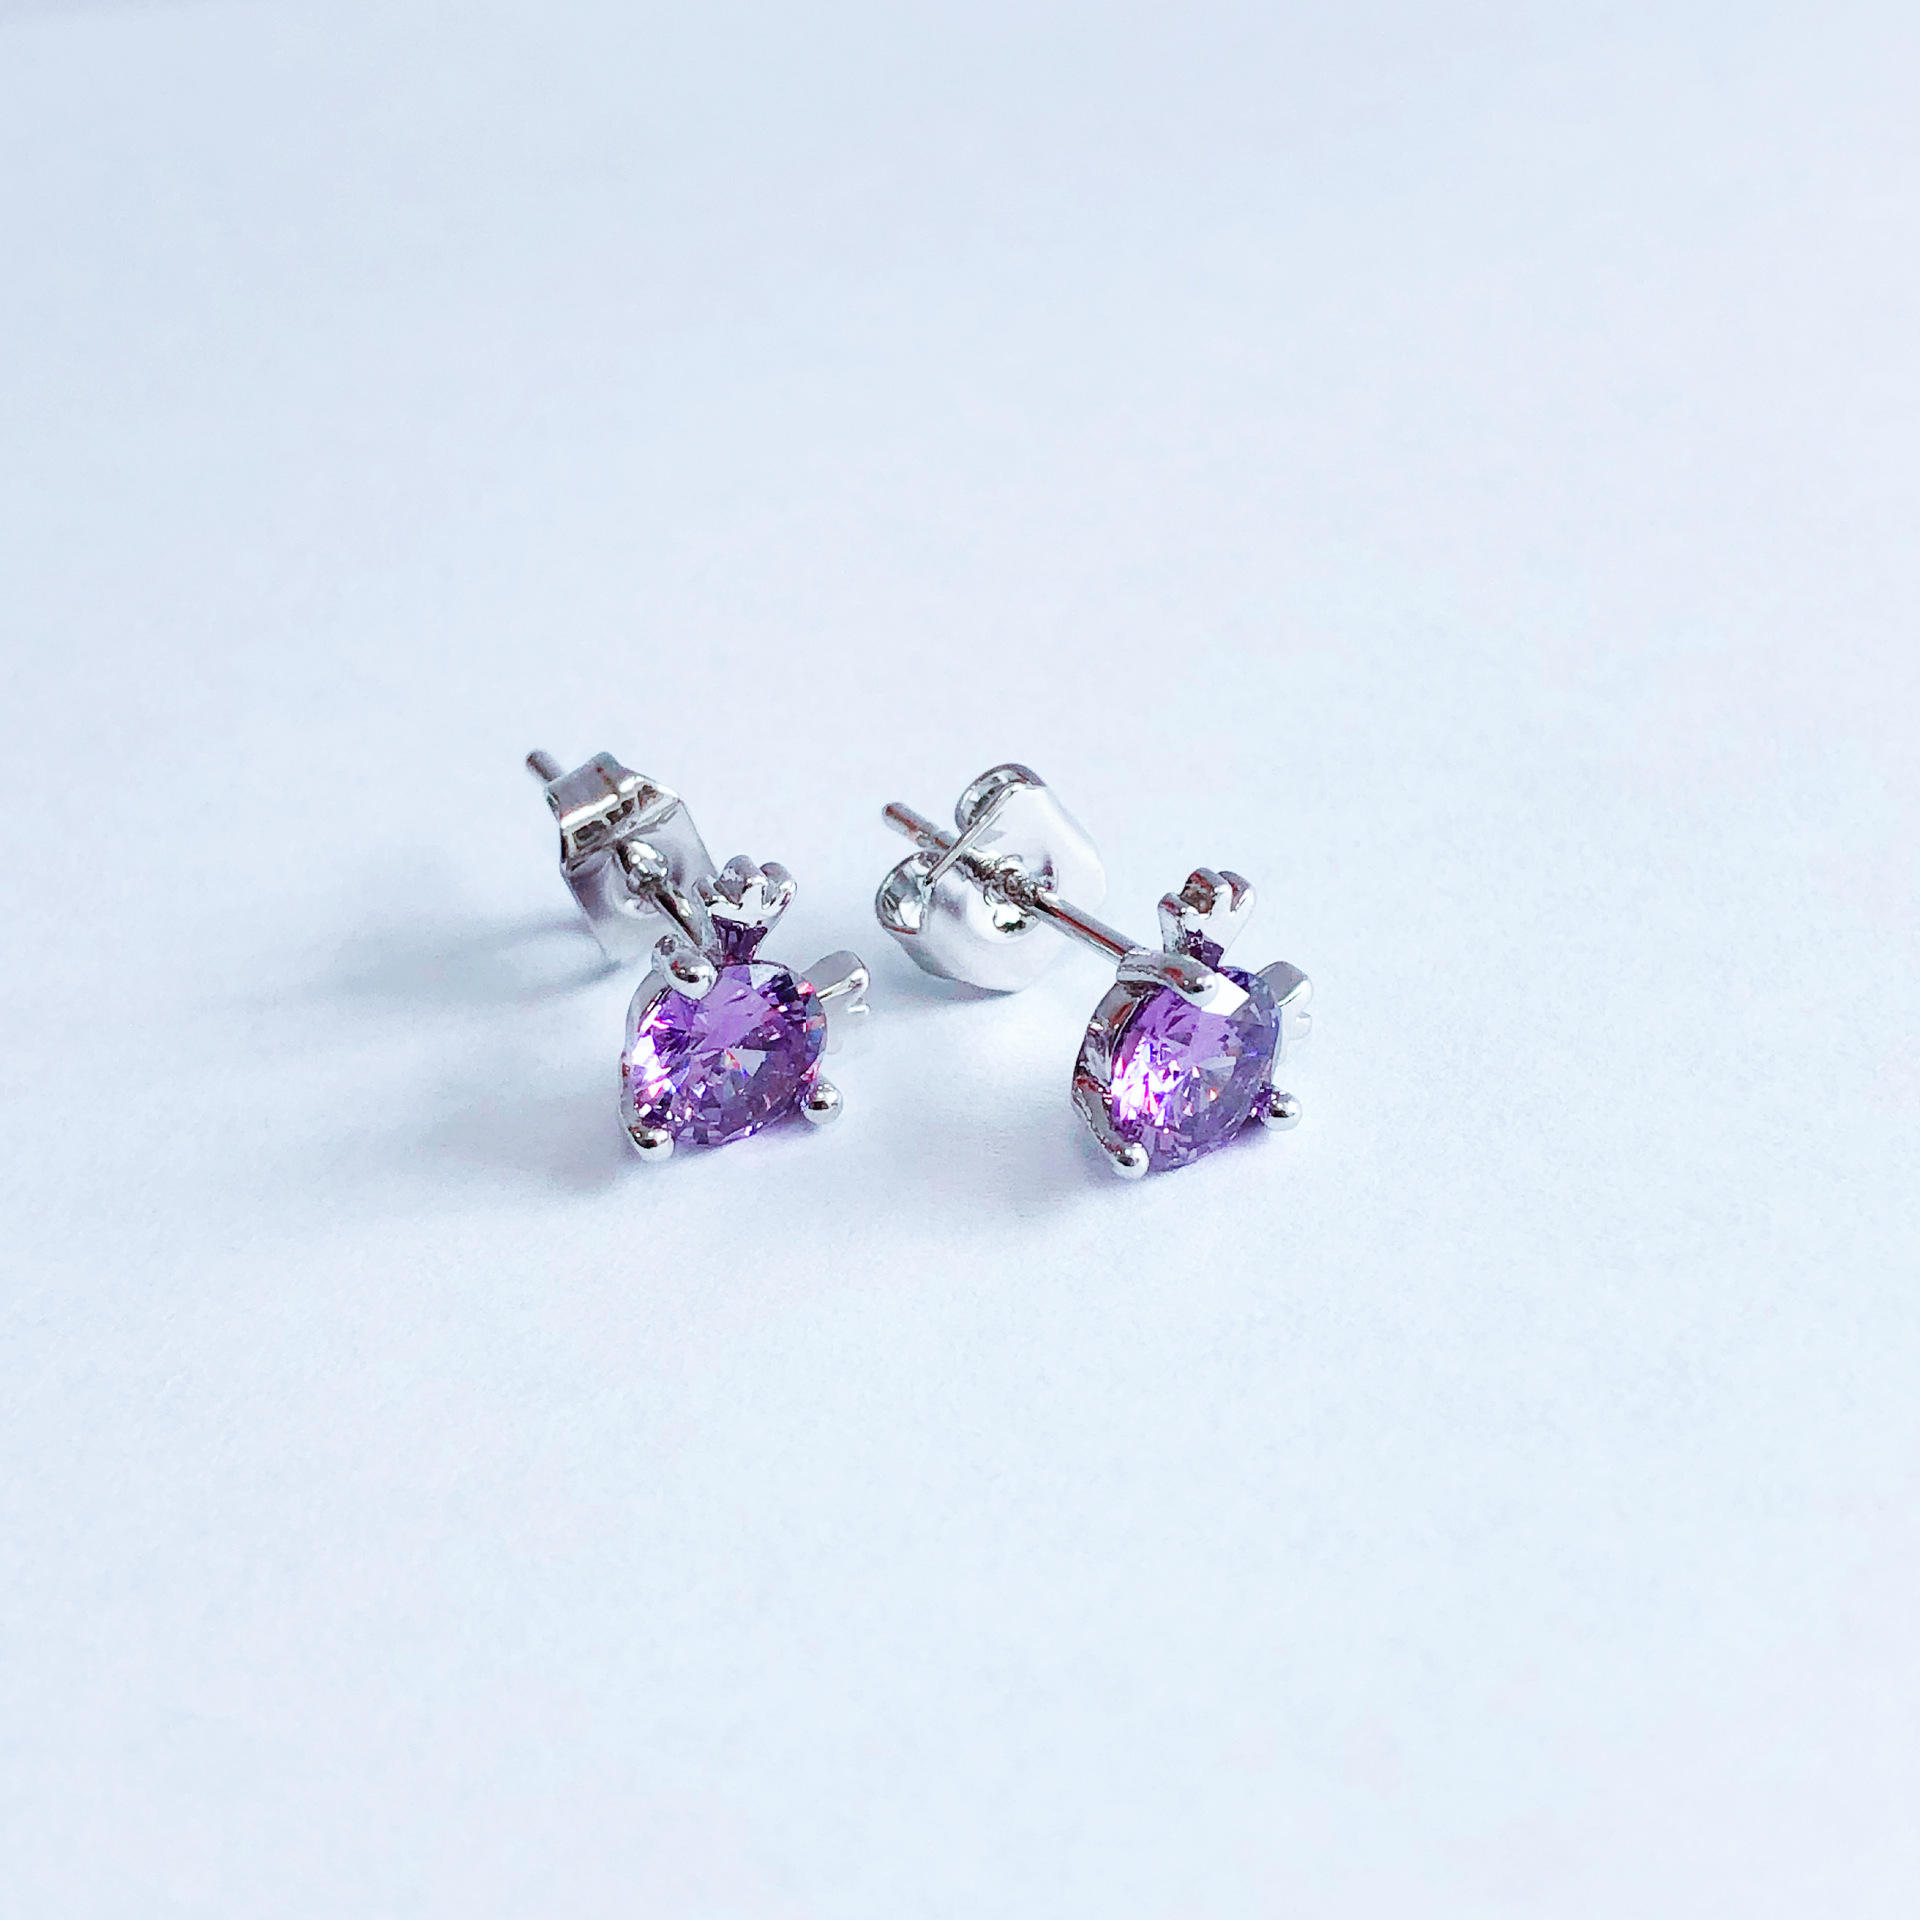 Antler stud - purple diamond